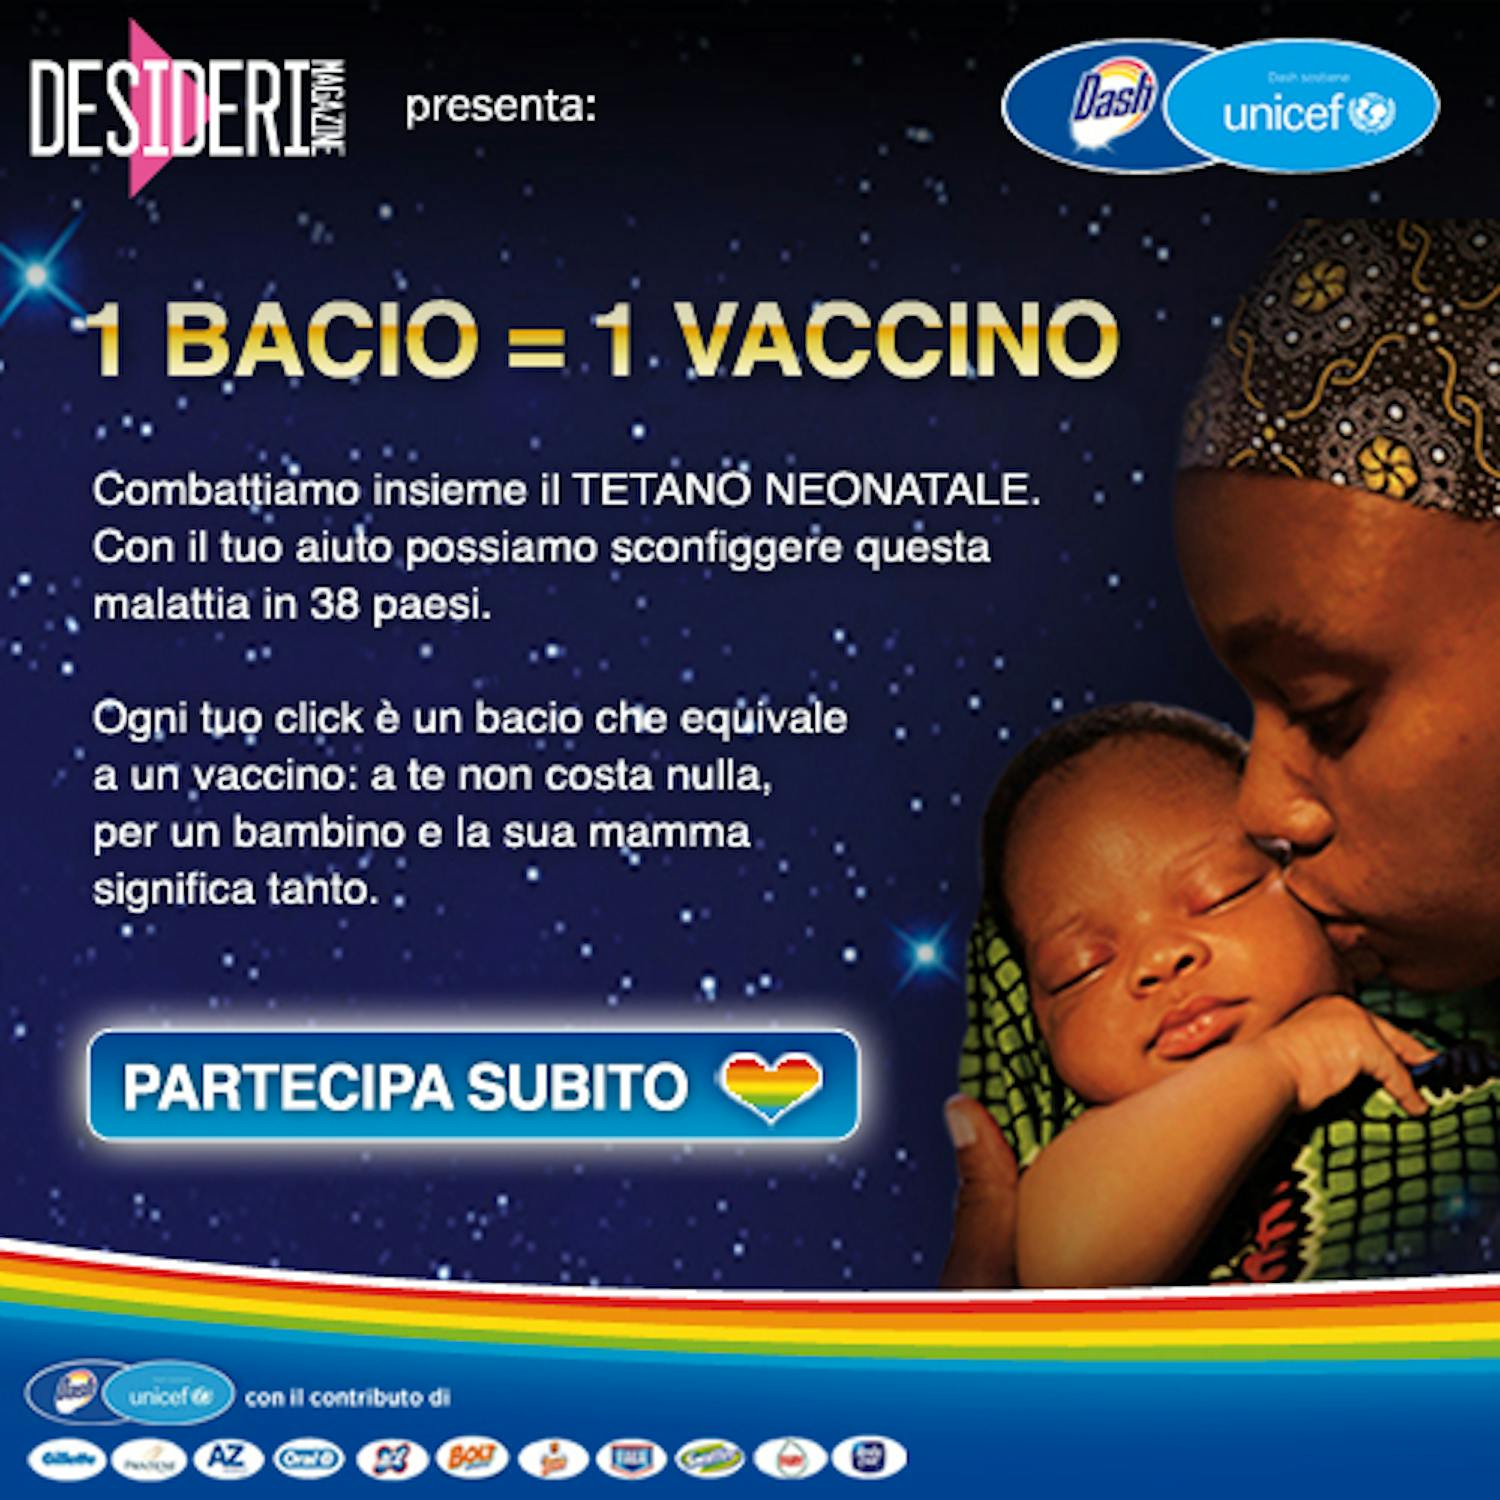 sul sito www.missionebonta.it è possibile aderire all'iniziativa promossa da P&G per combattere il tetano neonatale